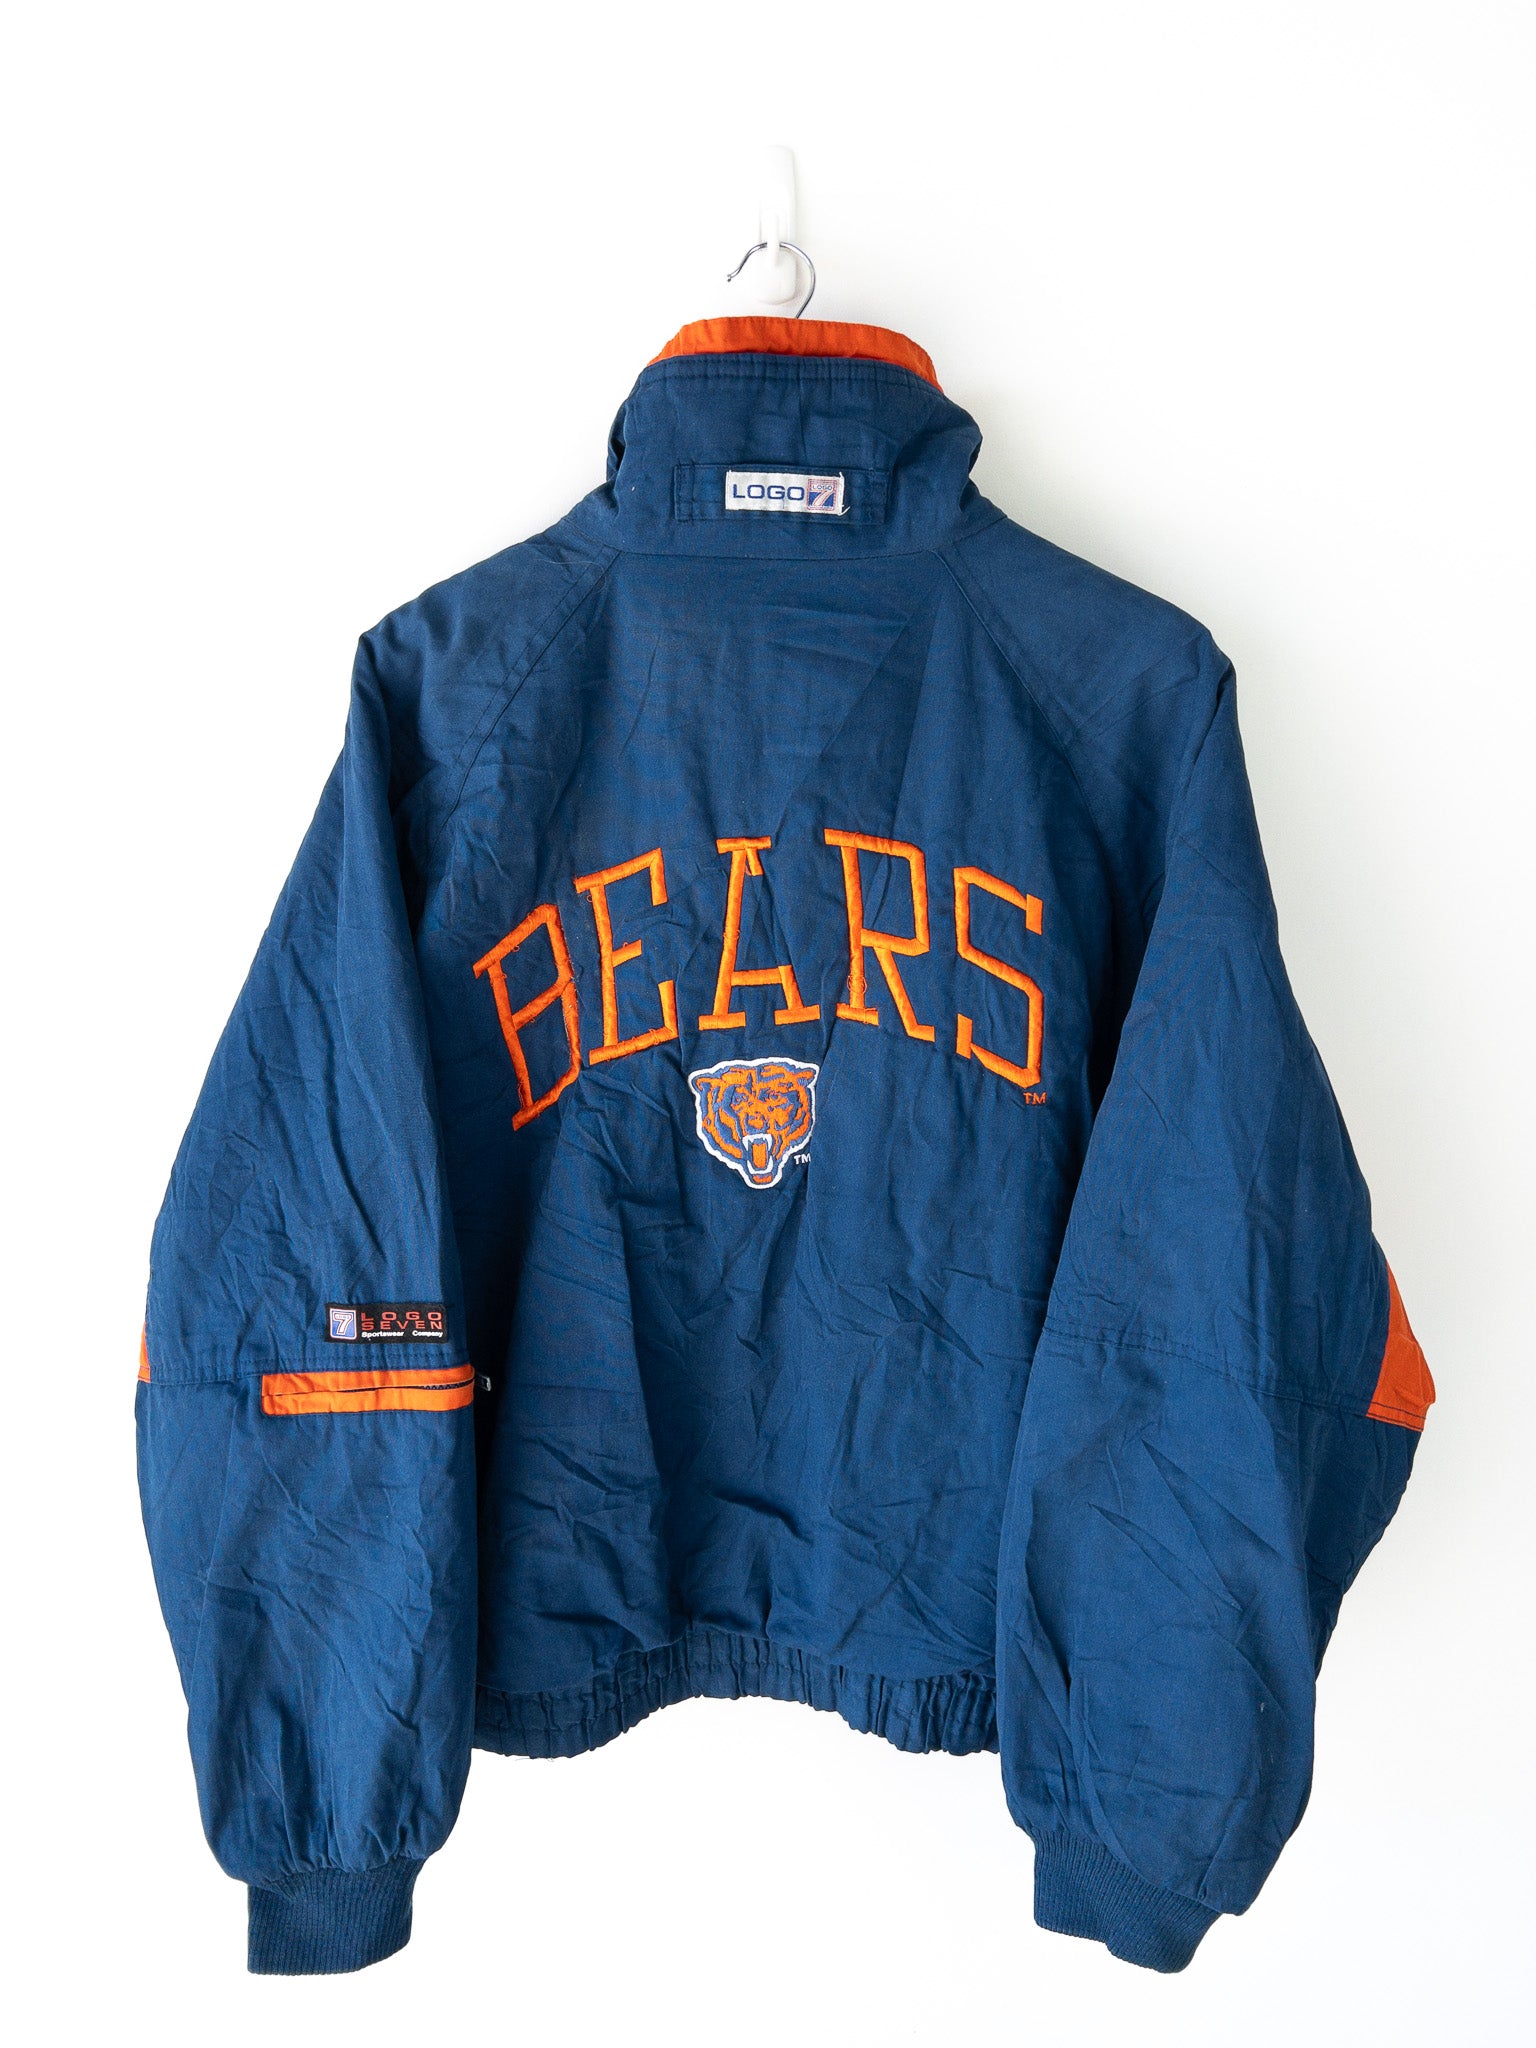 Vintage Chicago Bears Jacket (L)